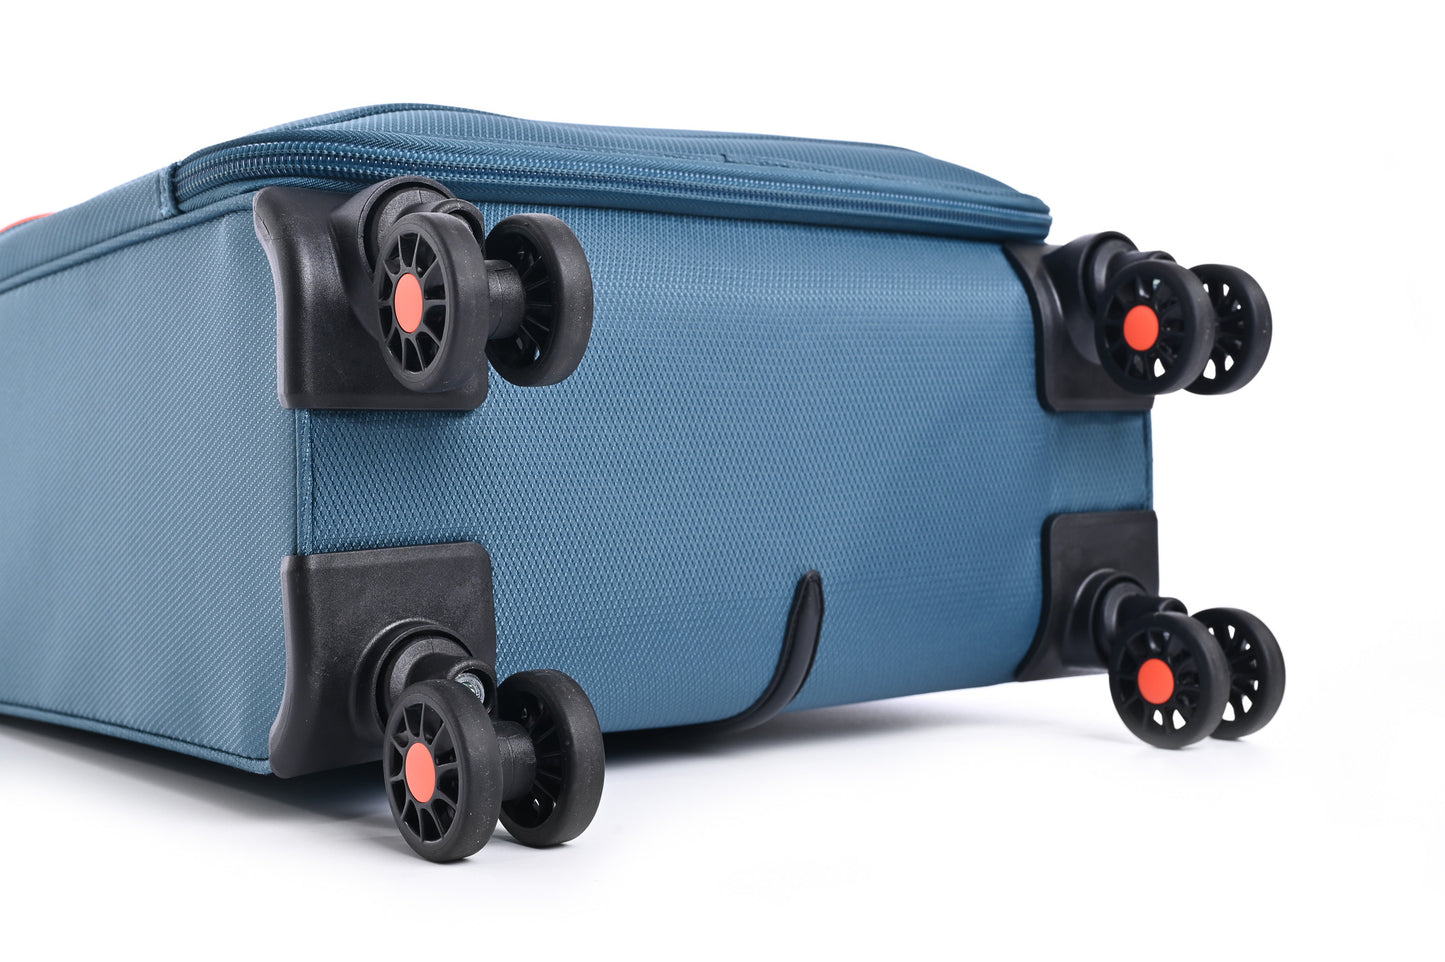 מזוודה טרולי עלייה למטוס ''18.5 דגם BARCELONA בצבע נייבי